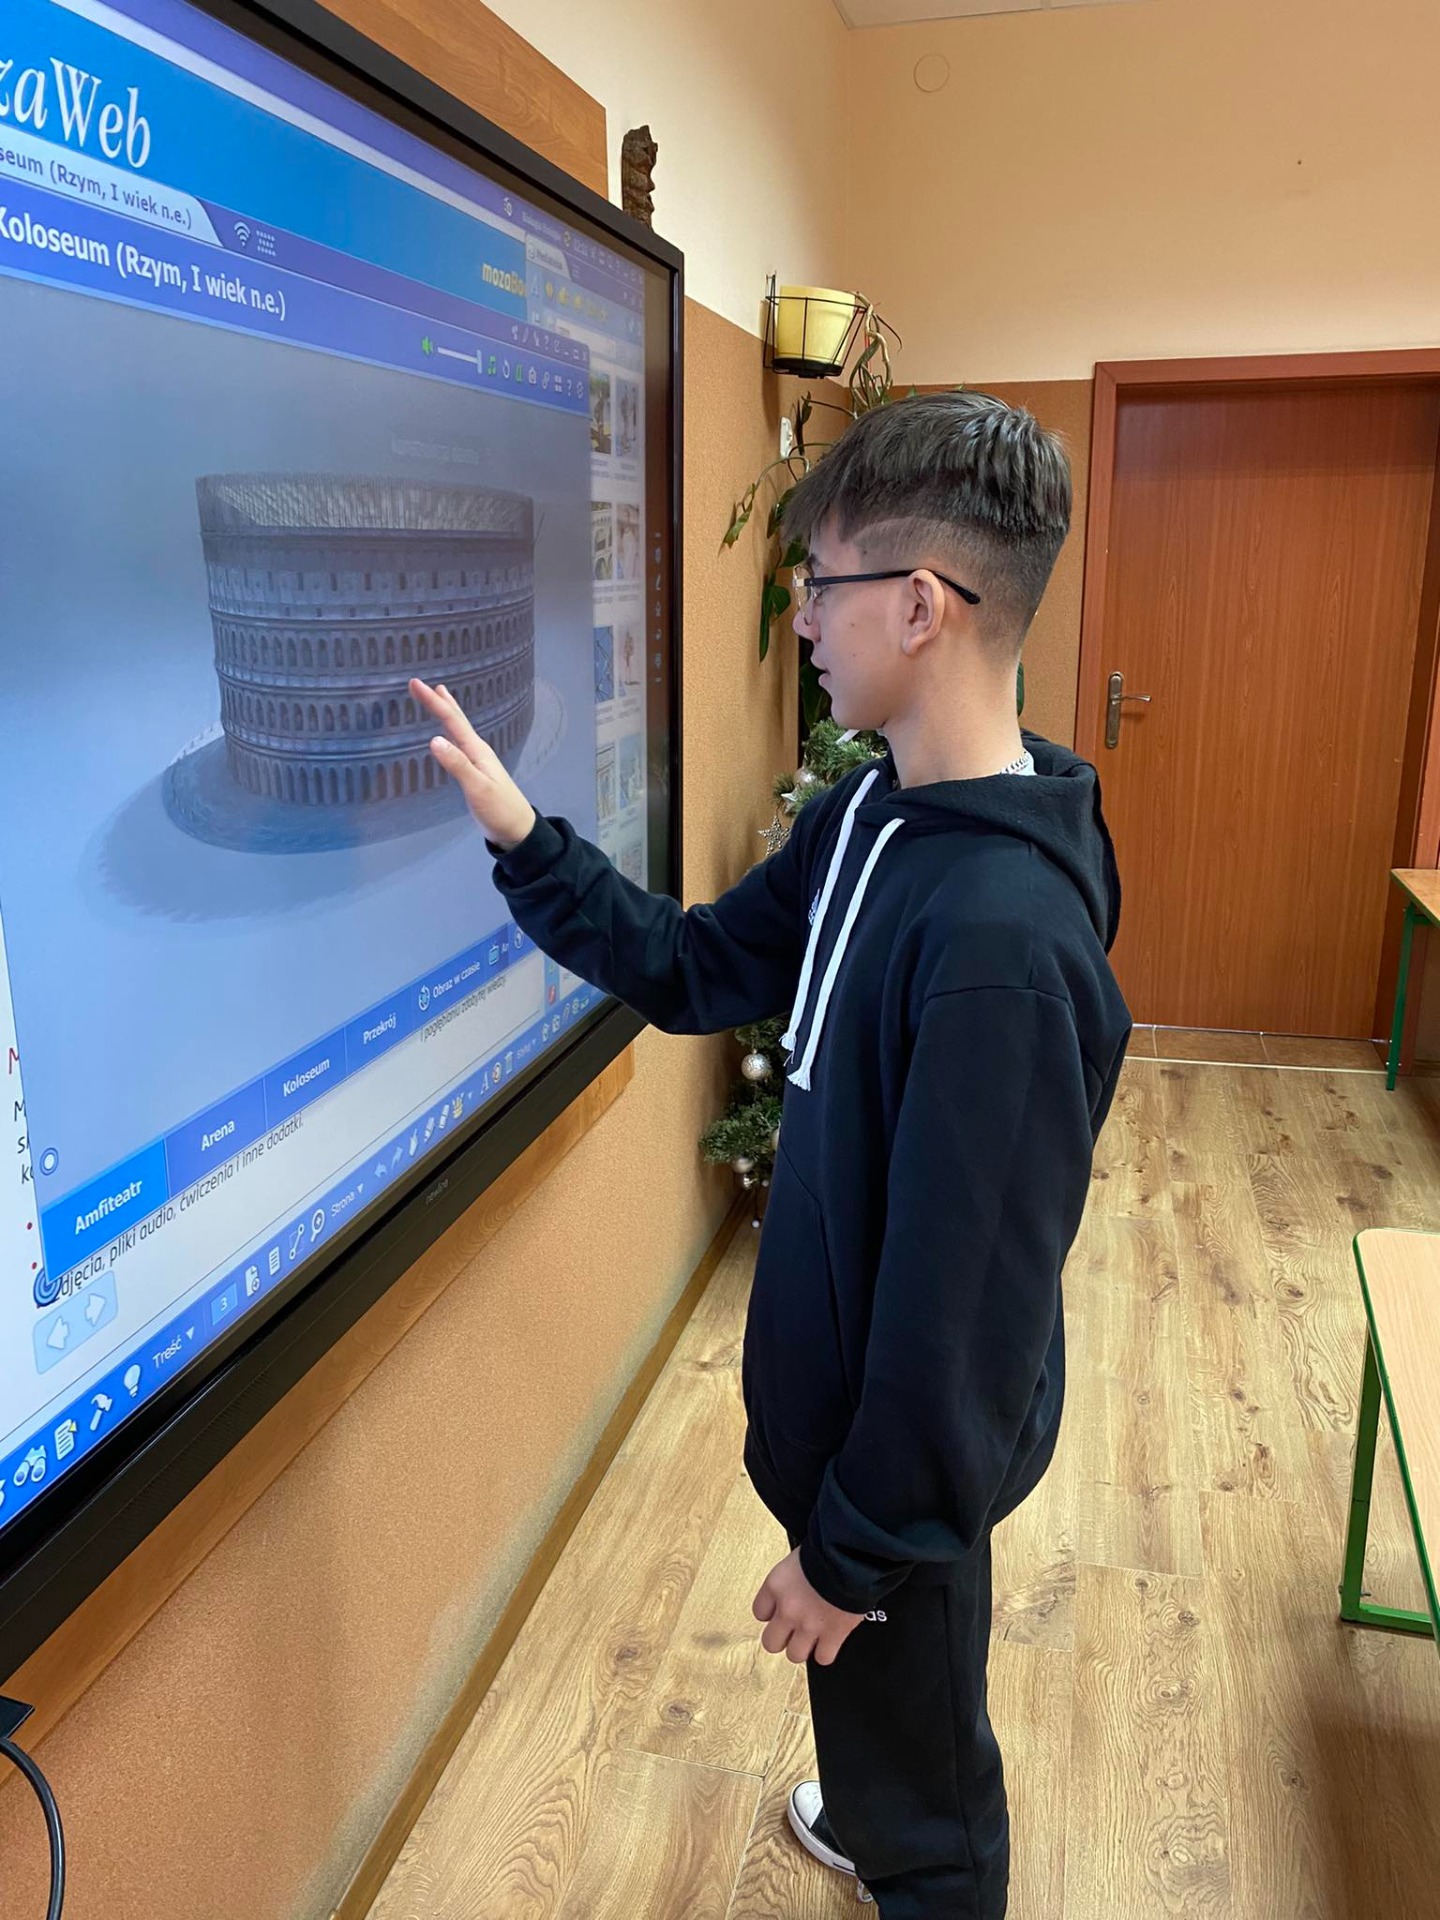 Uczeń stoi przy tablicy interaktywnej i ogląda Koloseum w 3D